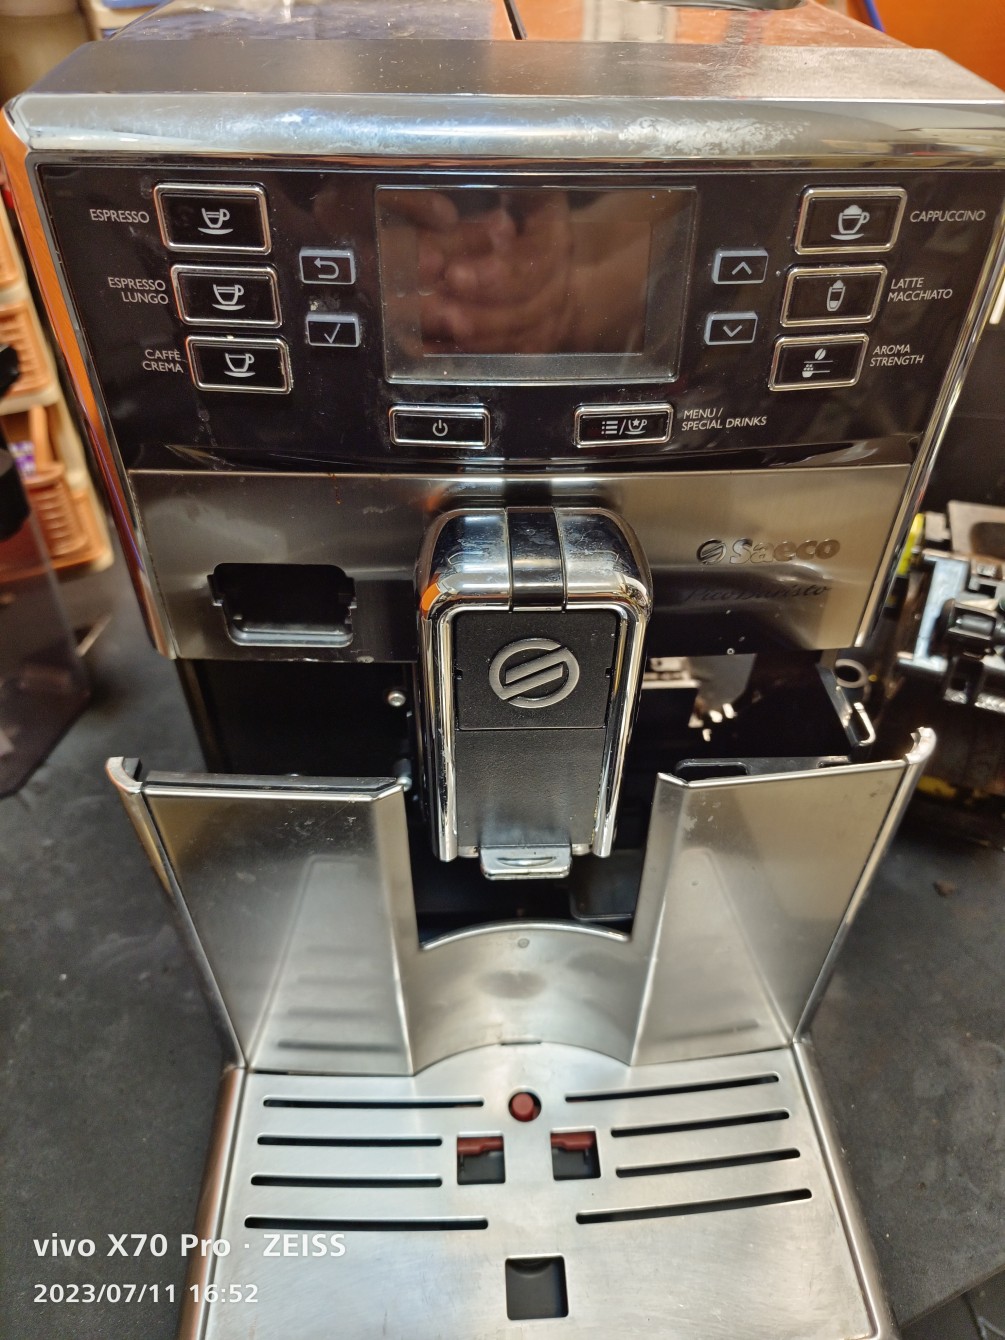 saeco -8927全自動咖啡機-無法出水蒸氣會漏水維修保養